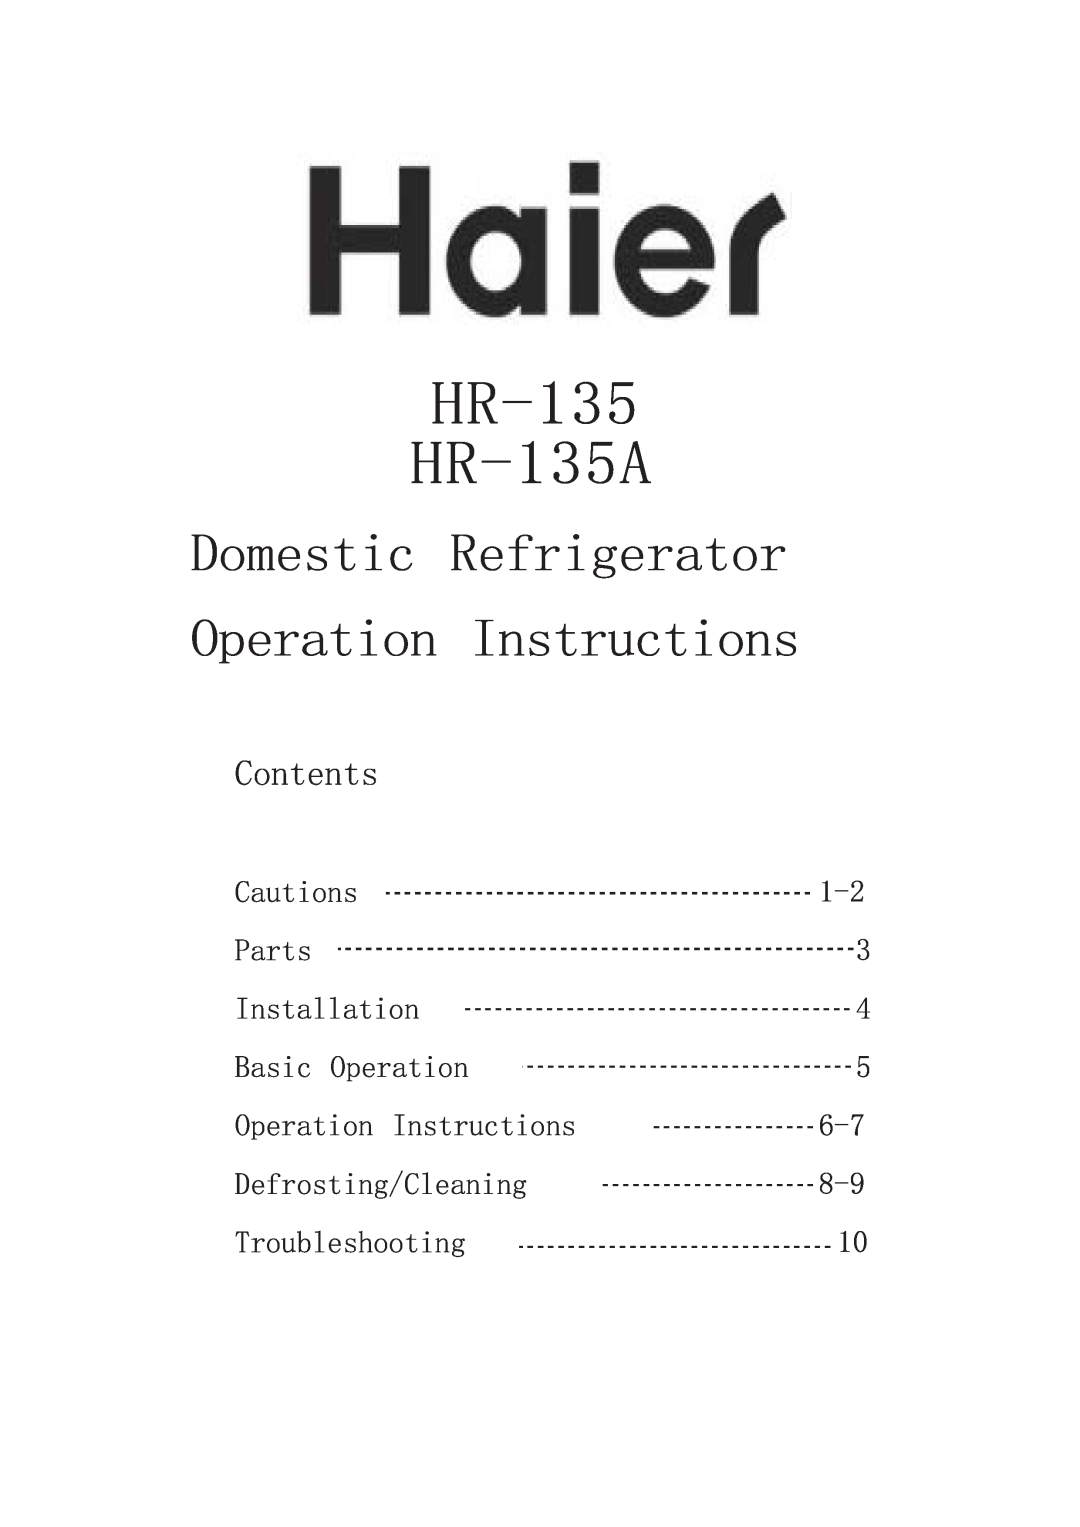 Haier HR-135A manual +5 +5$, RPHVWLF 5HIULJHUDWRU 2SHUDWLRQ ,QVWUXFWLRQV, Rqwhqwv 